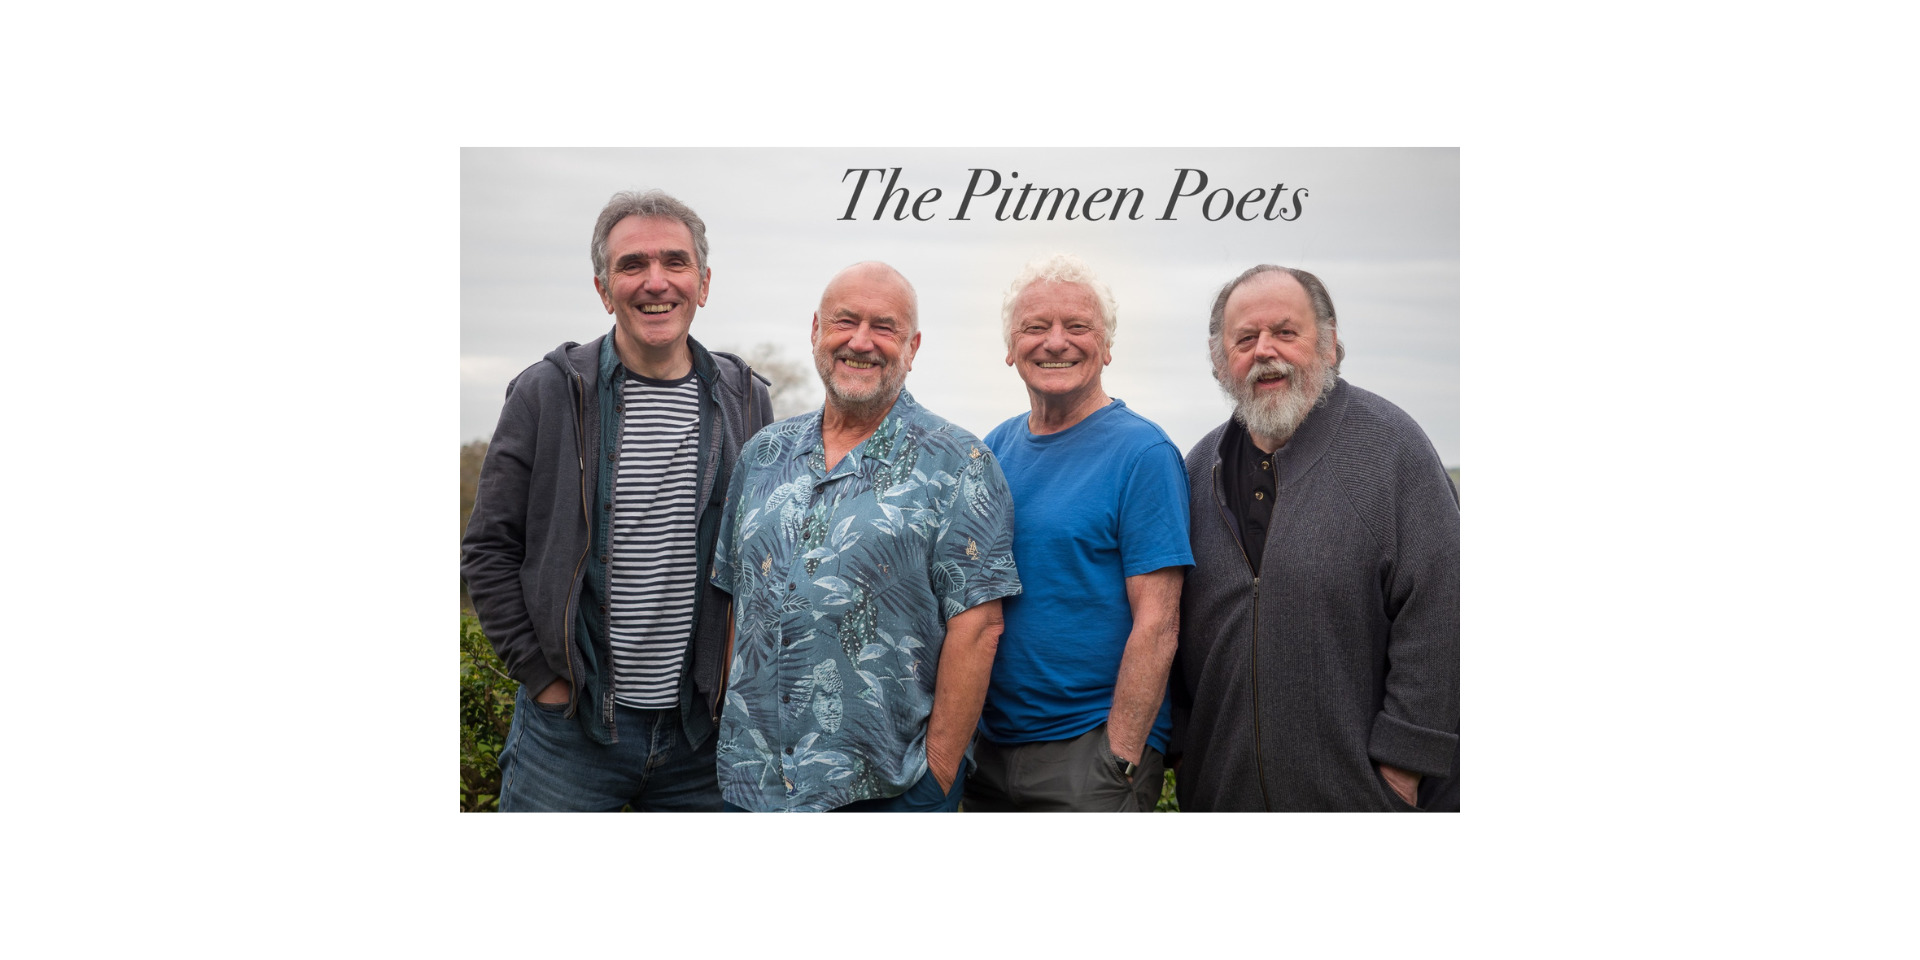 The Pitmen Poets